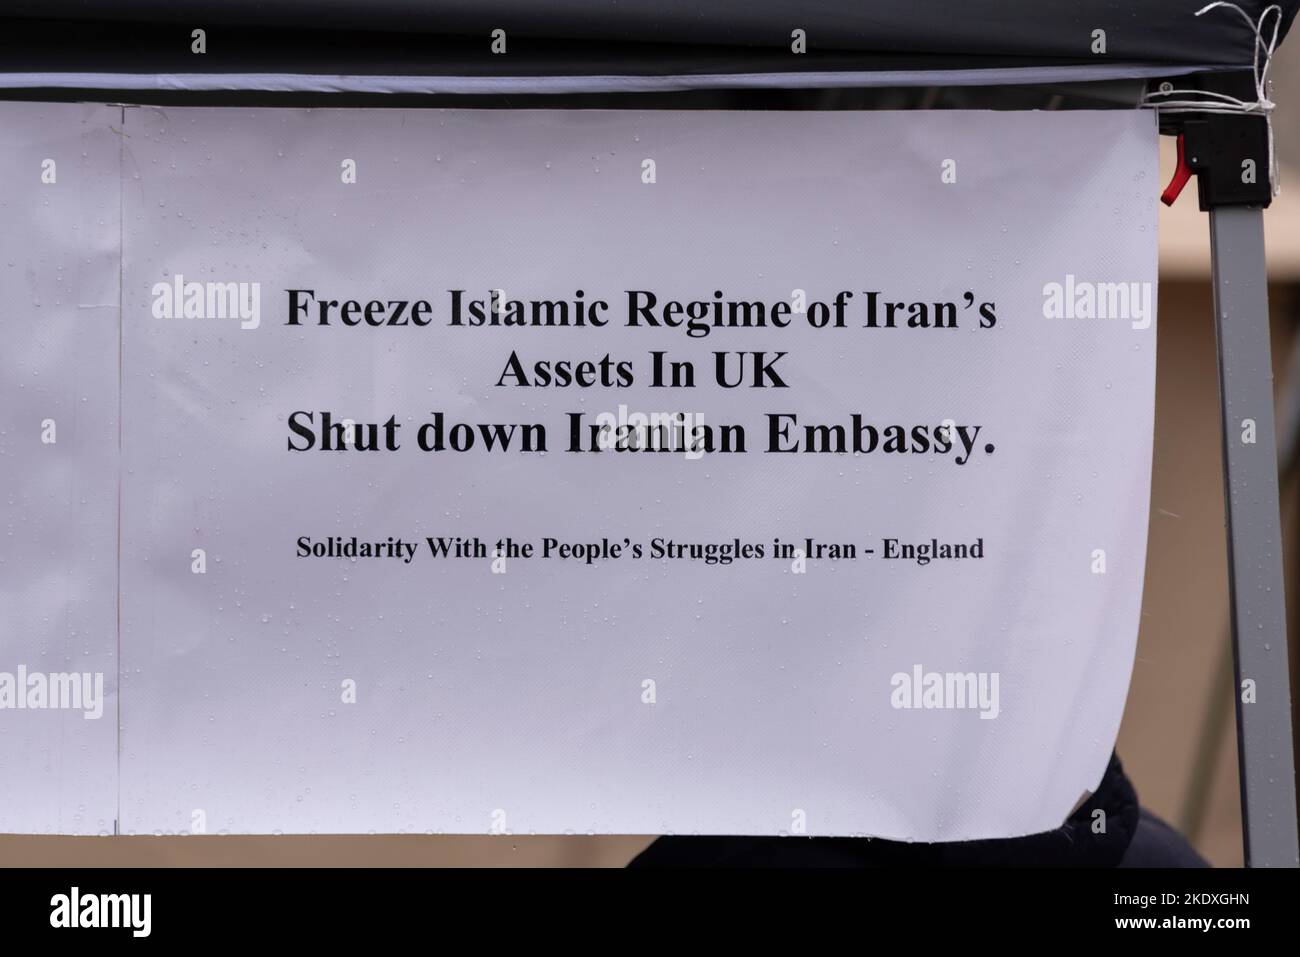 Protestbotschaft gegen das iranische Regime. Einfrieren des islamischen Regimes von iranischen Vermögenswerten in Großbritannien. Die iranische Botschaft wird geschlossen. Solidarität mit den Kämpfen der Menschen Stockfoto